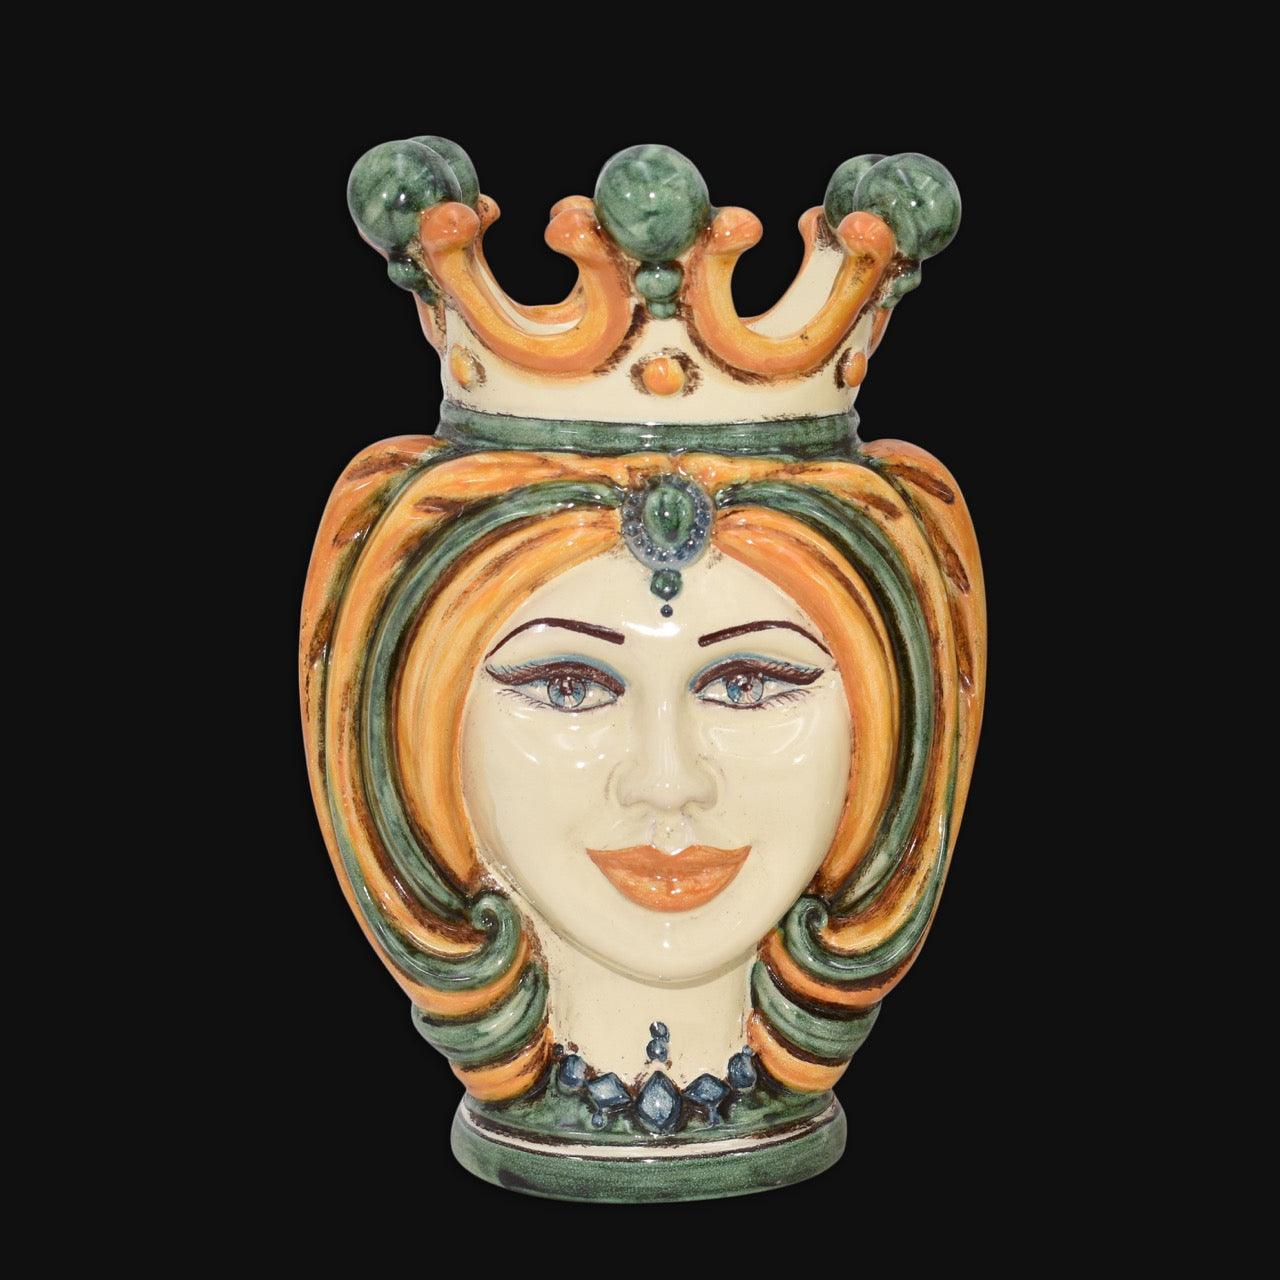 Testa h 25 turbante verde/arancio - Ceramiche di Caltagirone Sofia - Ceramiche di Caltagirone Sofia